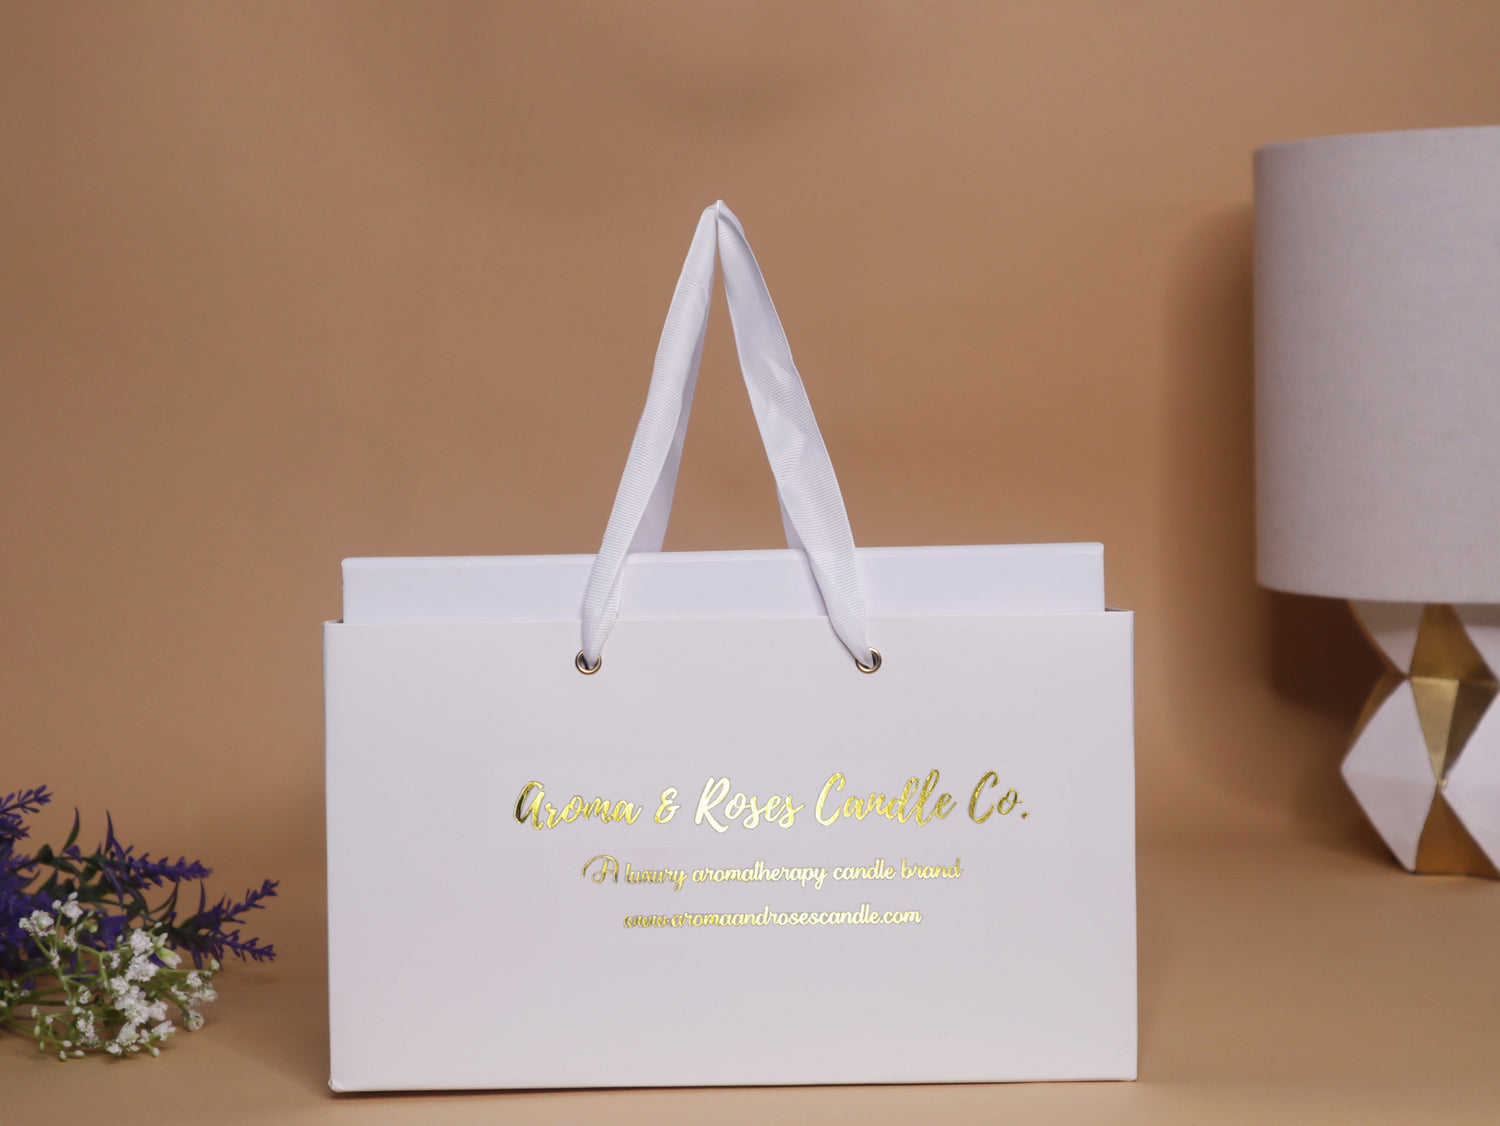 Luxury Gift Bag - aromaandrosescandle